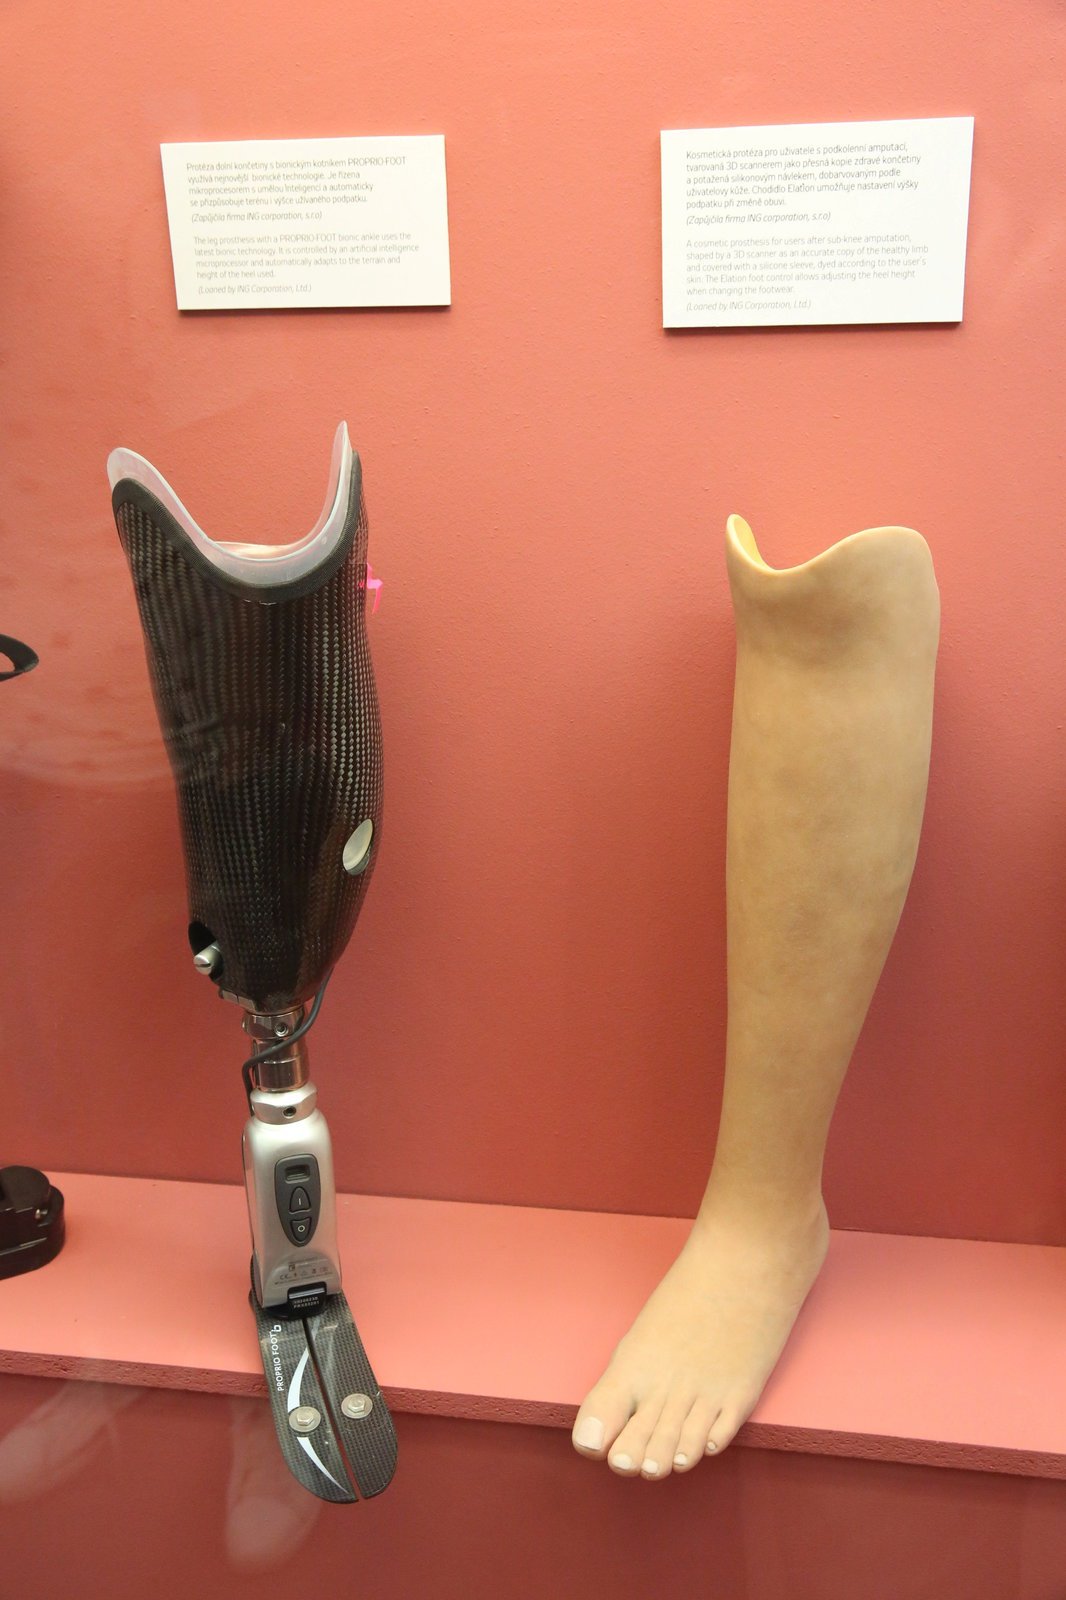 DNES Protézy se vyrábí 3D scannerem, který vytvoří přesnou kopii zdravé končetiny a ta se potáhne silikonovým návlekem a dobarví podle barvy kůže uživatele.